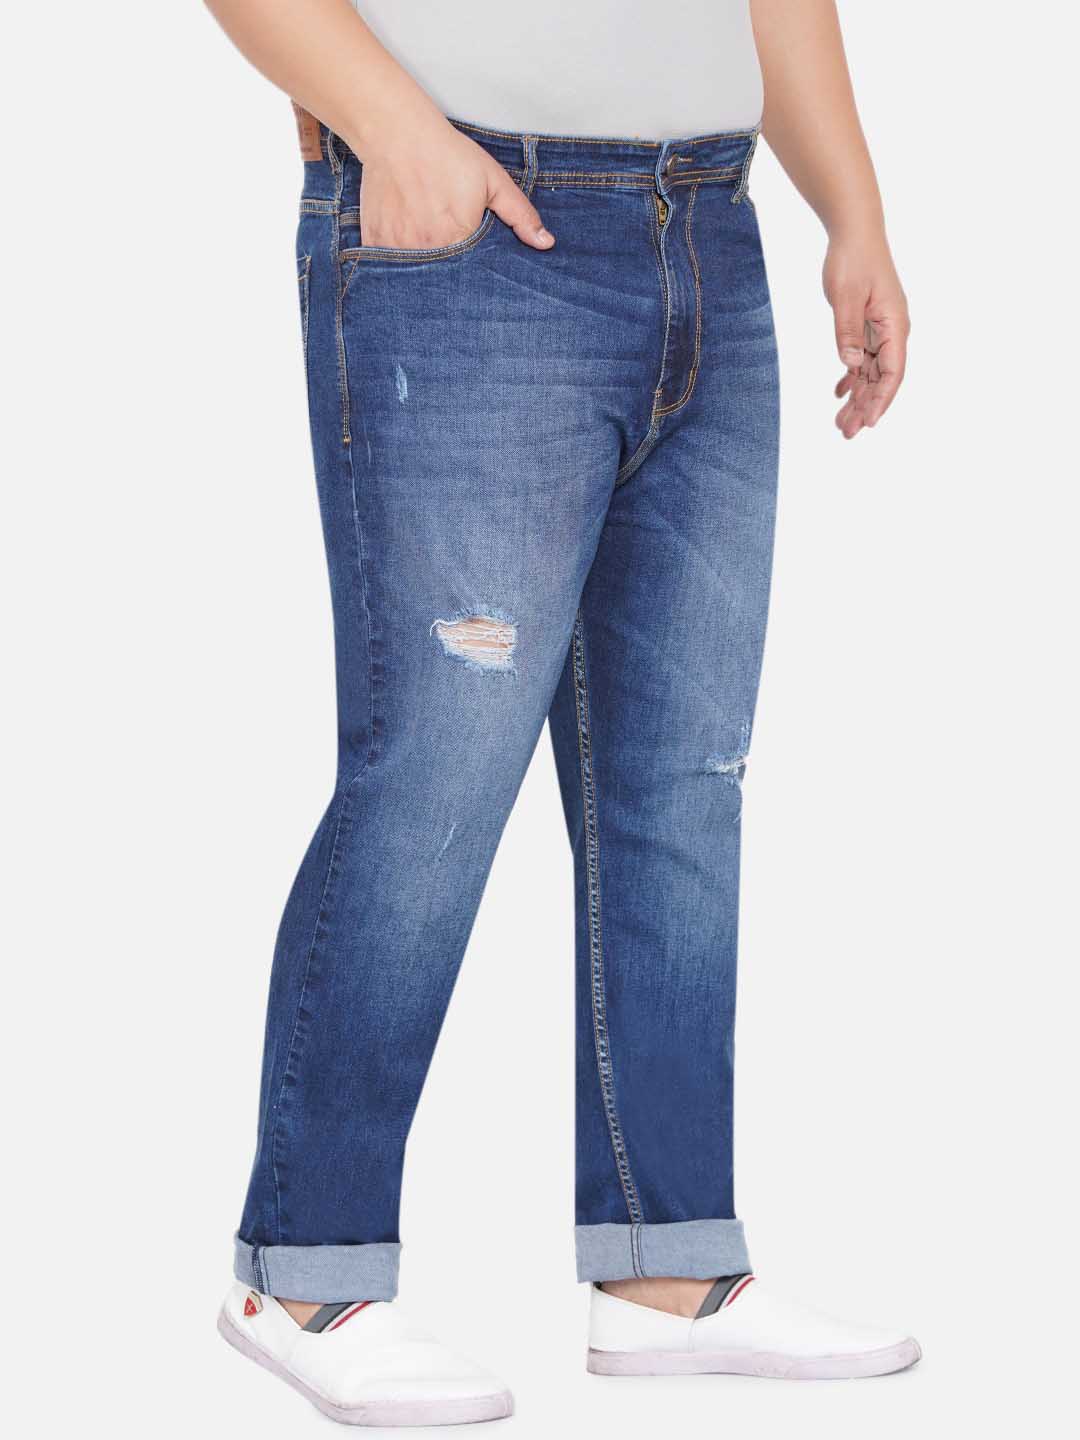 bottomwear/jeans/EJPJ25043/ejpj25043-3.jpg